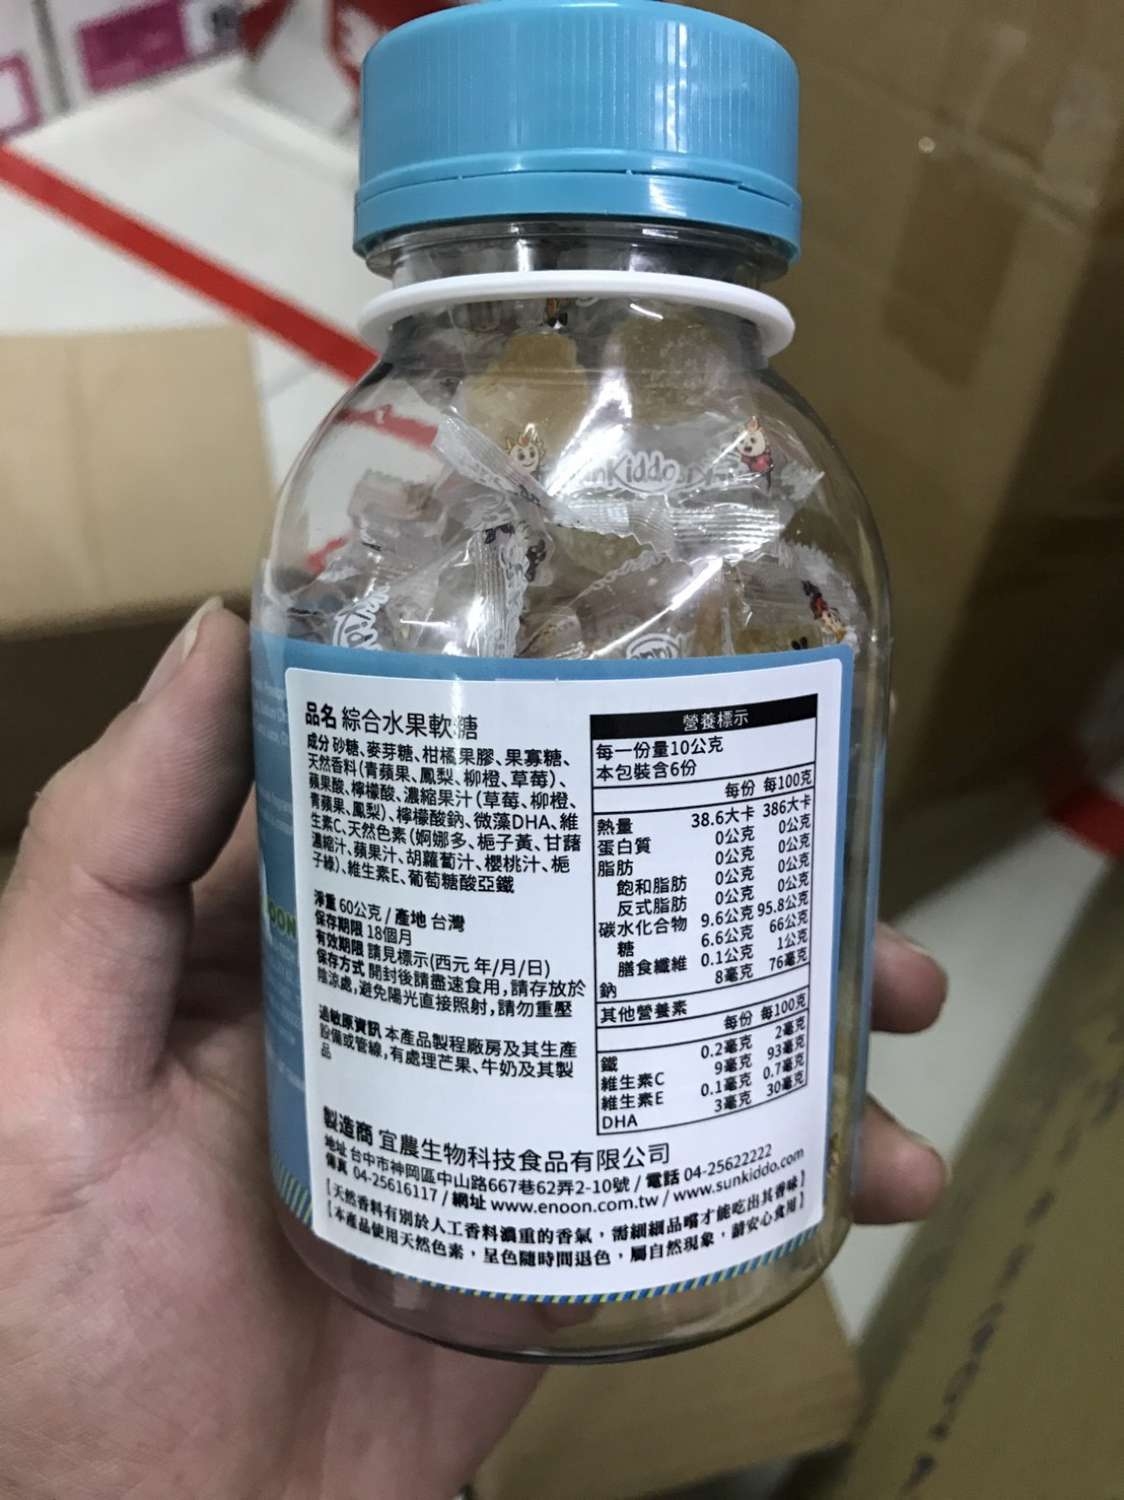 衛生局追查黑心軟糖  業者已自主下架共9品項計12.15公斤3